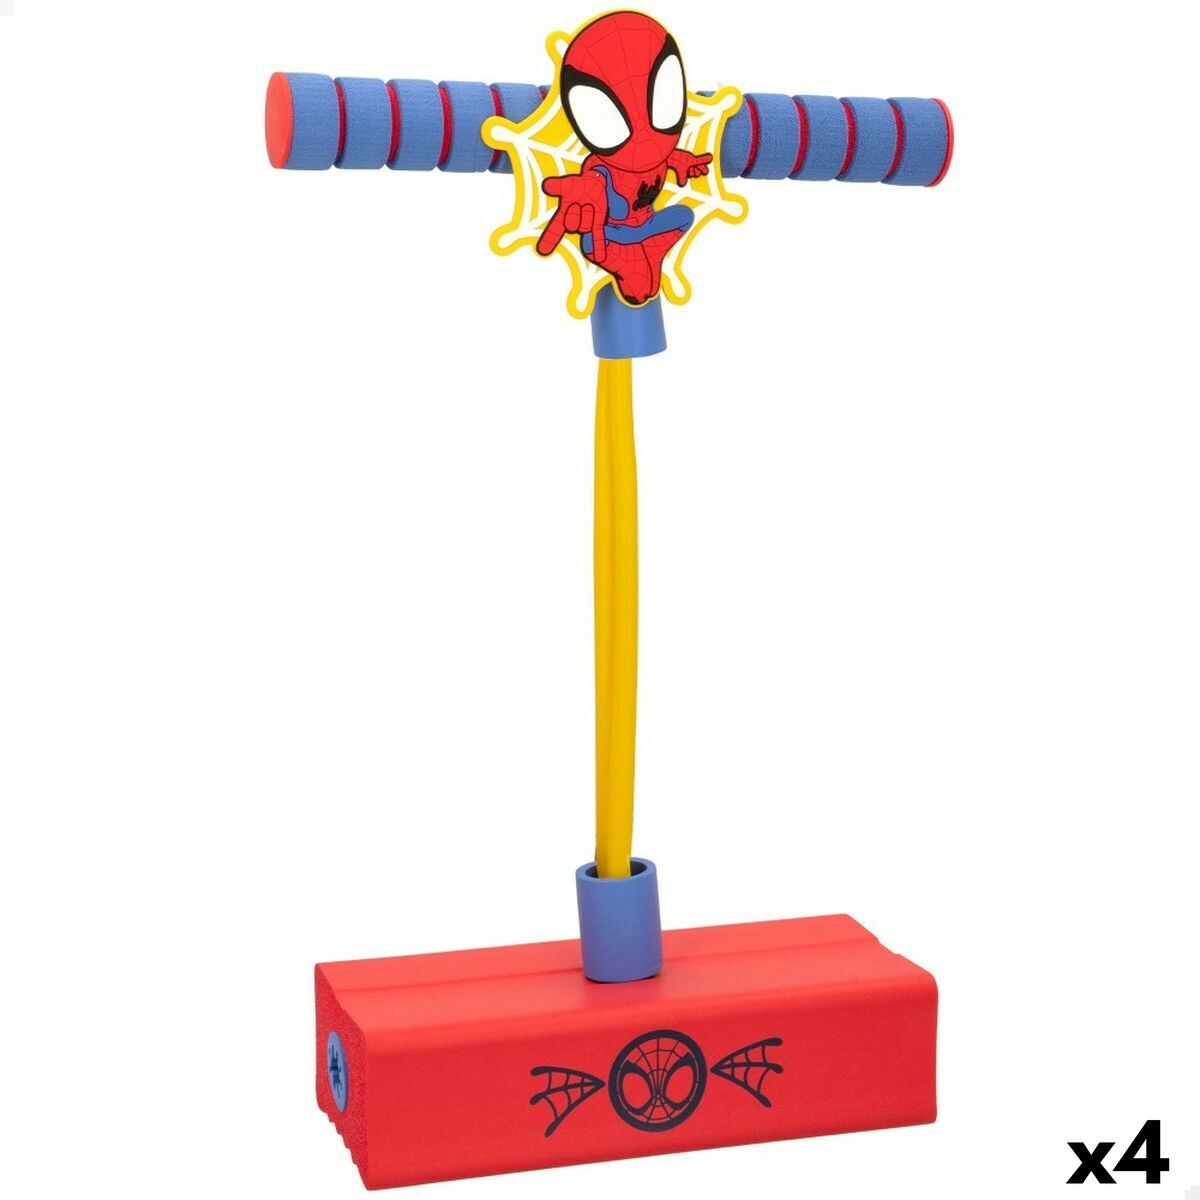 Pogospringer Spider-Man 3D Rot Für Kinder (4 Stück)